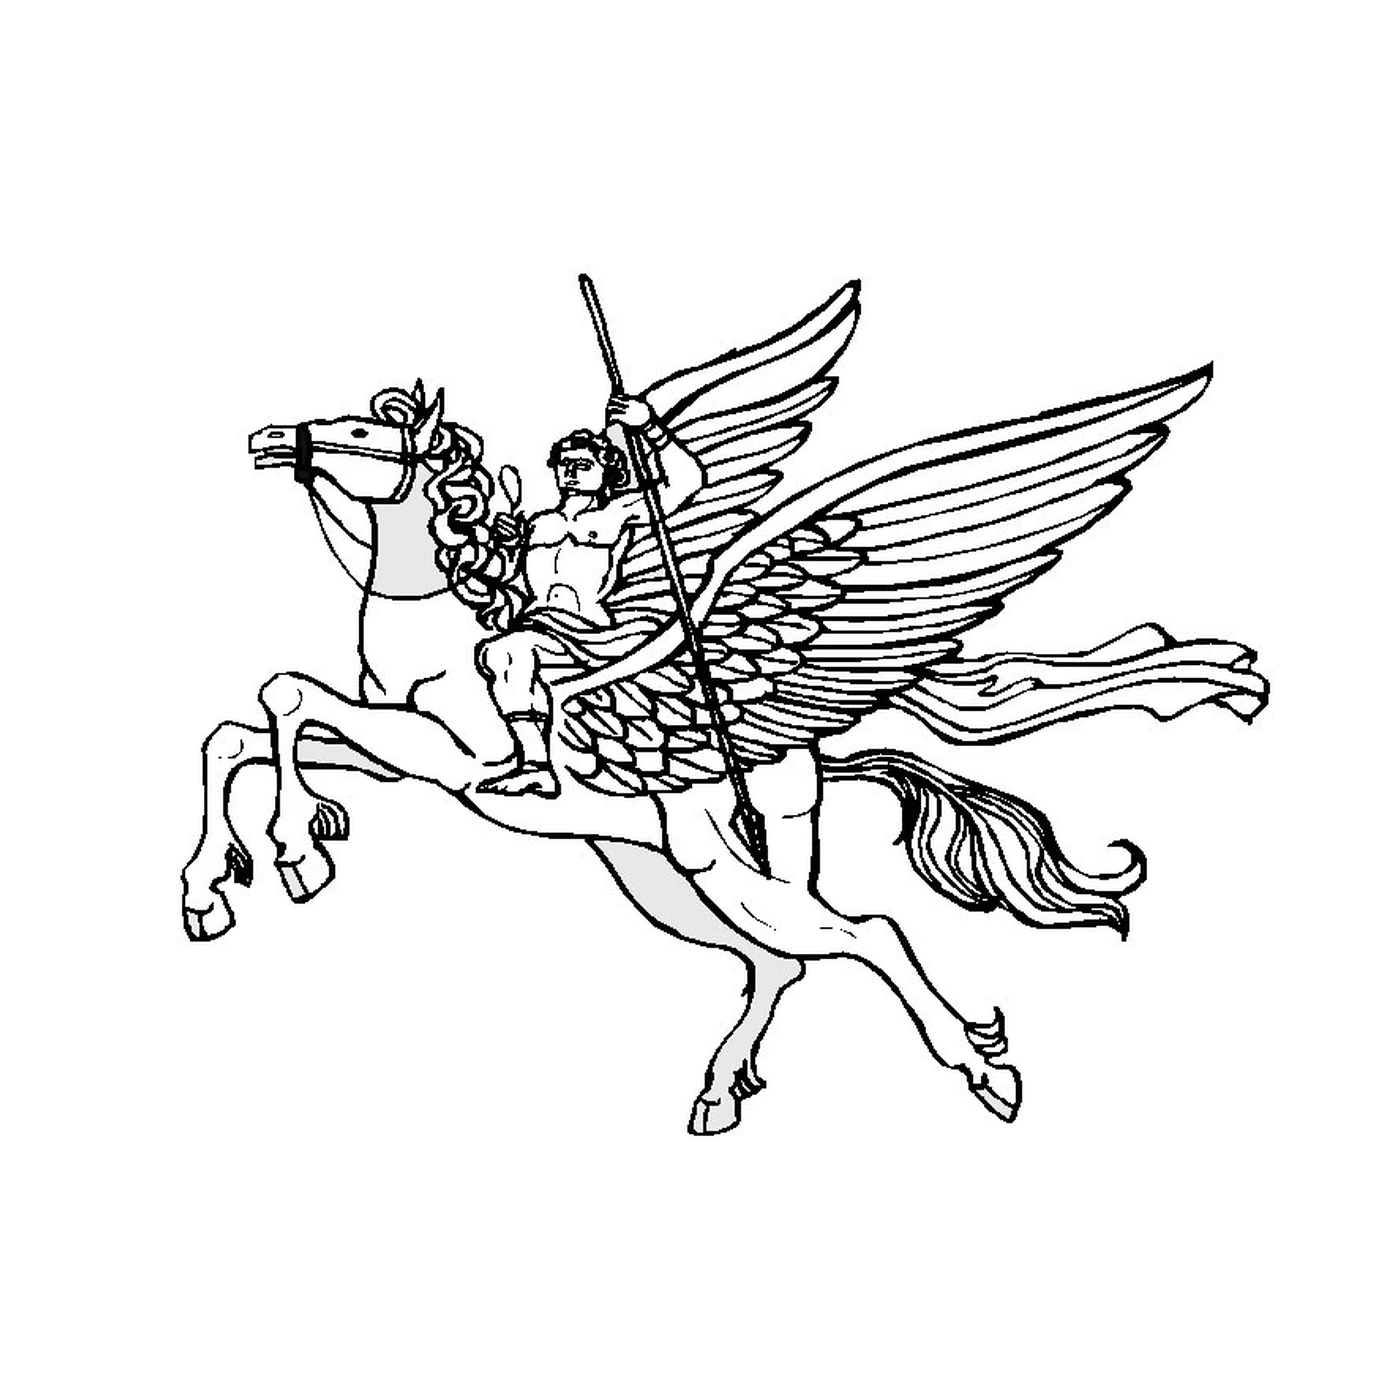  Mann reitet auf einem geflügelten Pferd 